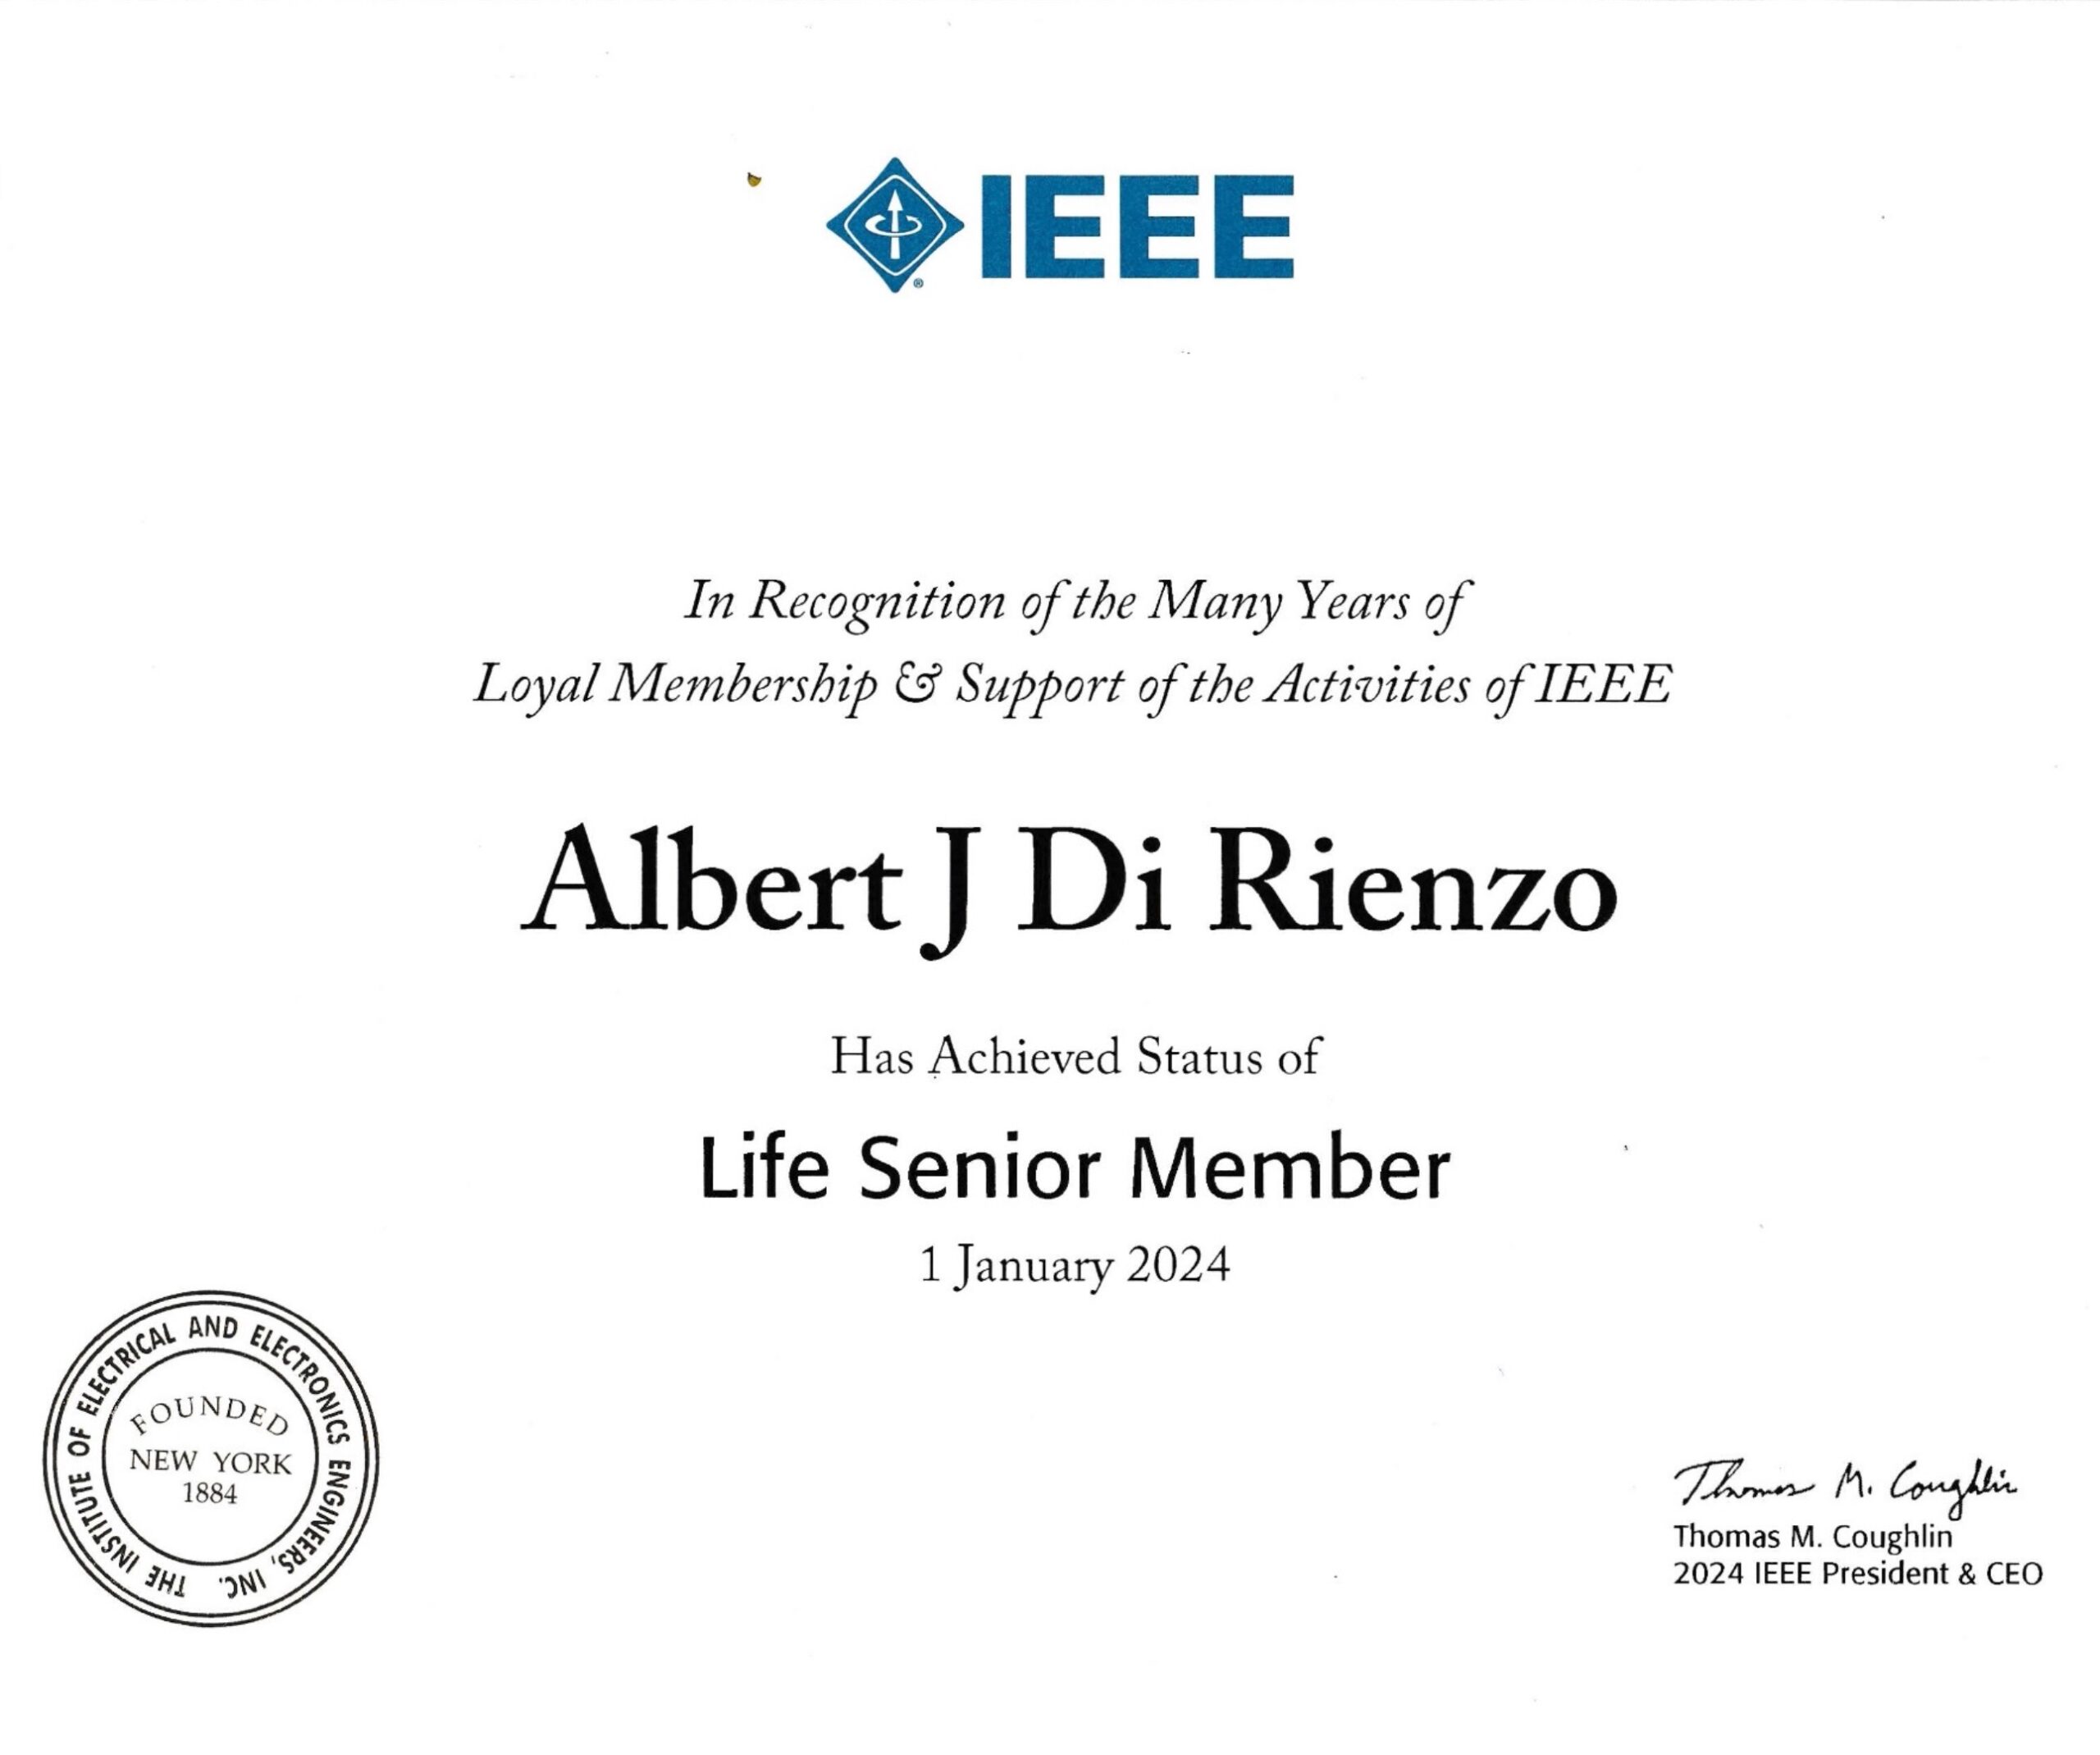 IEEE Life Senior Member awarded to OHG President